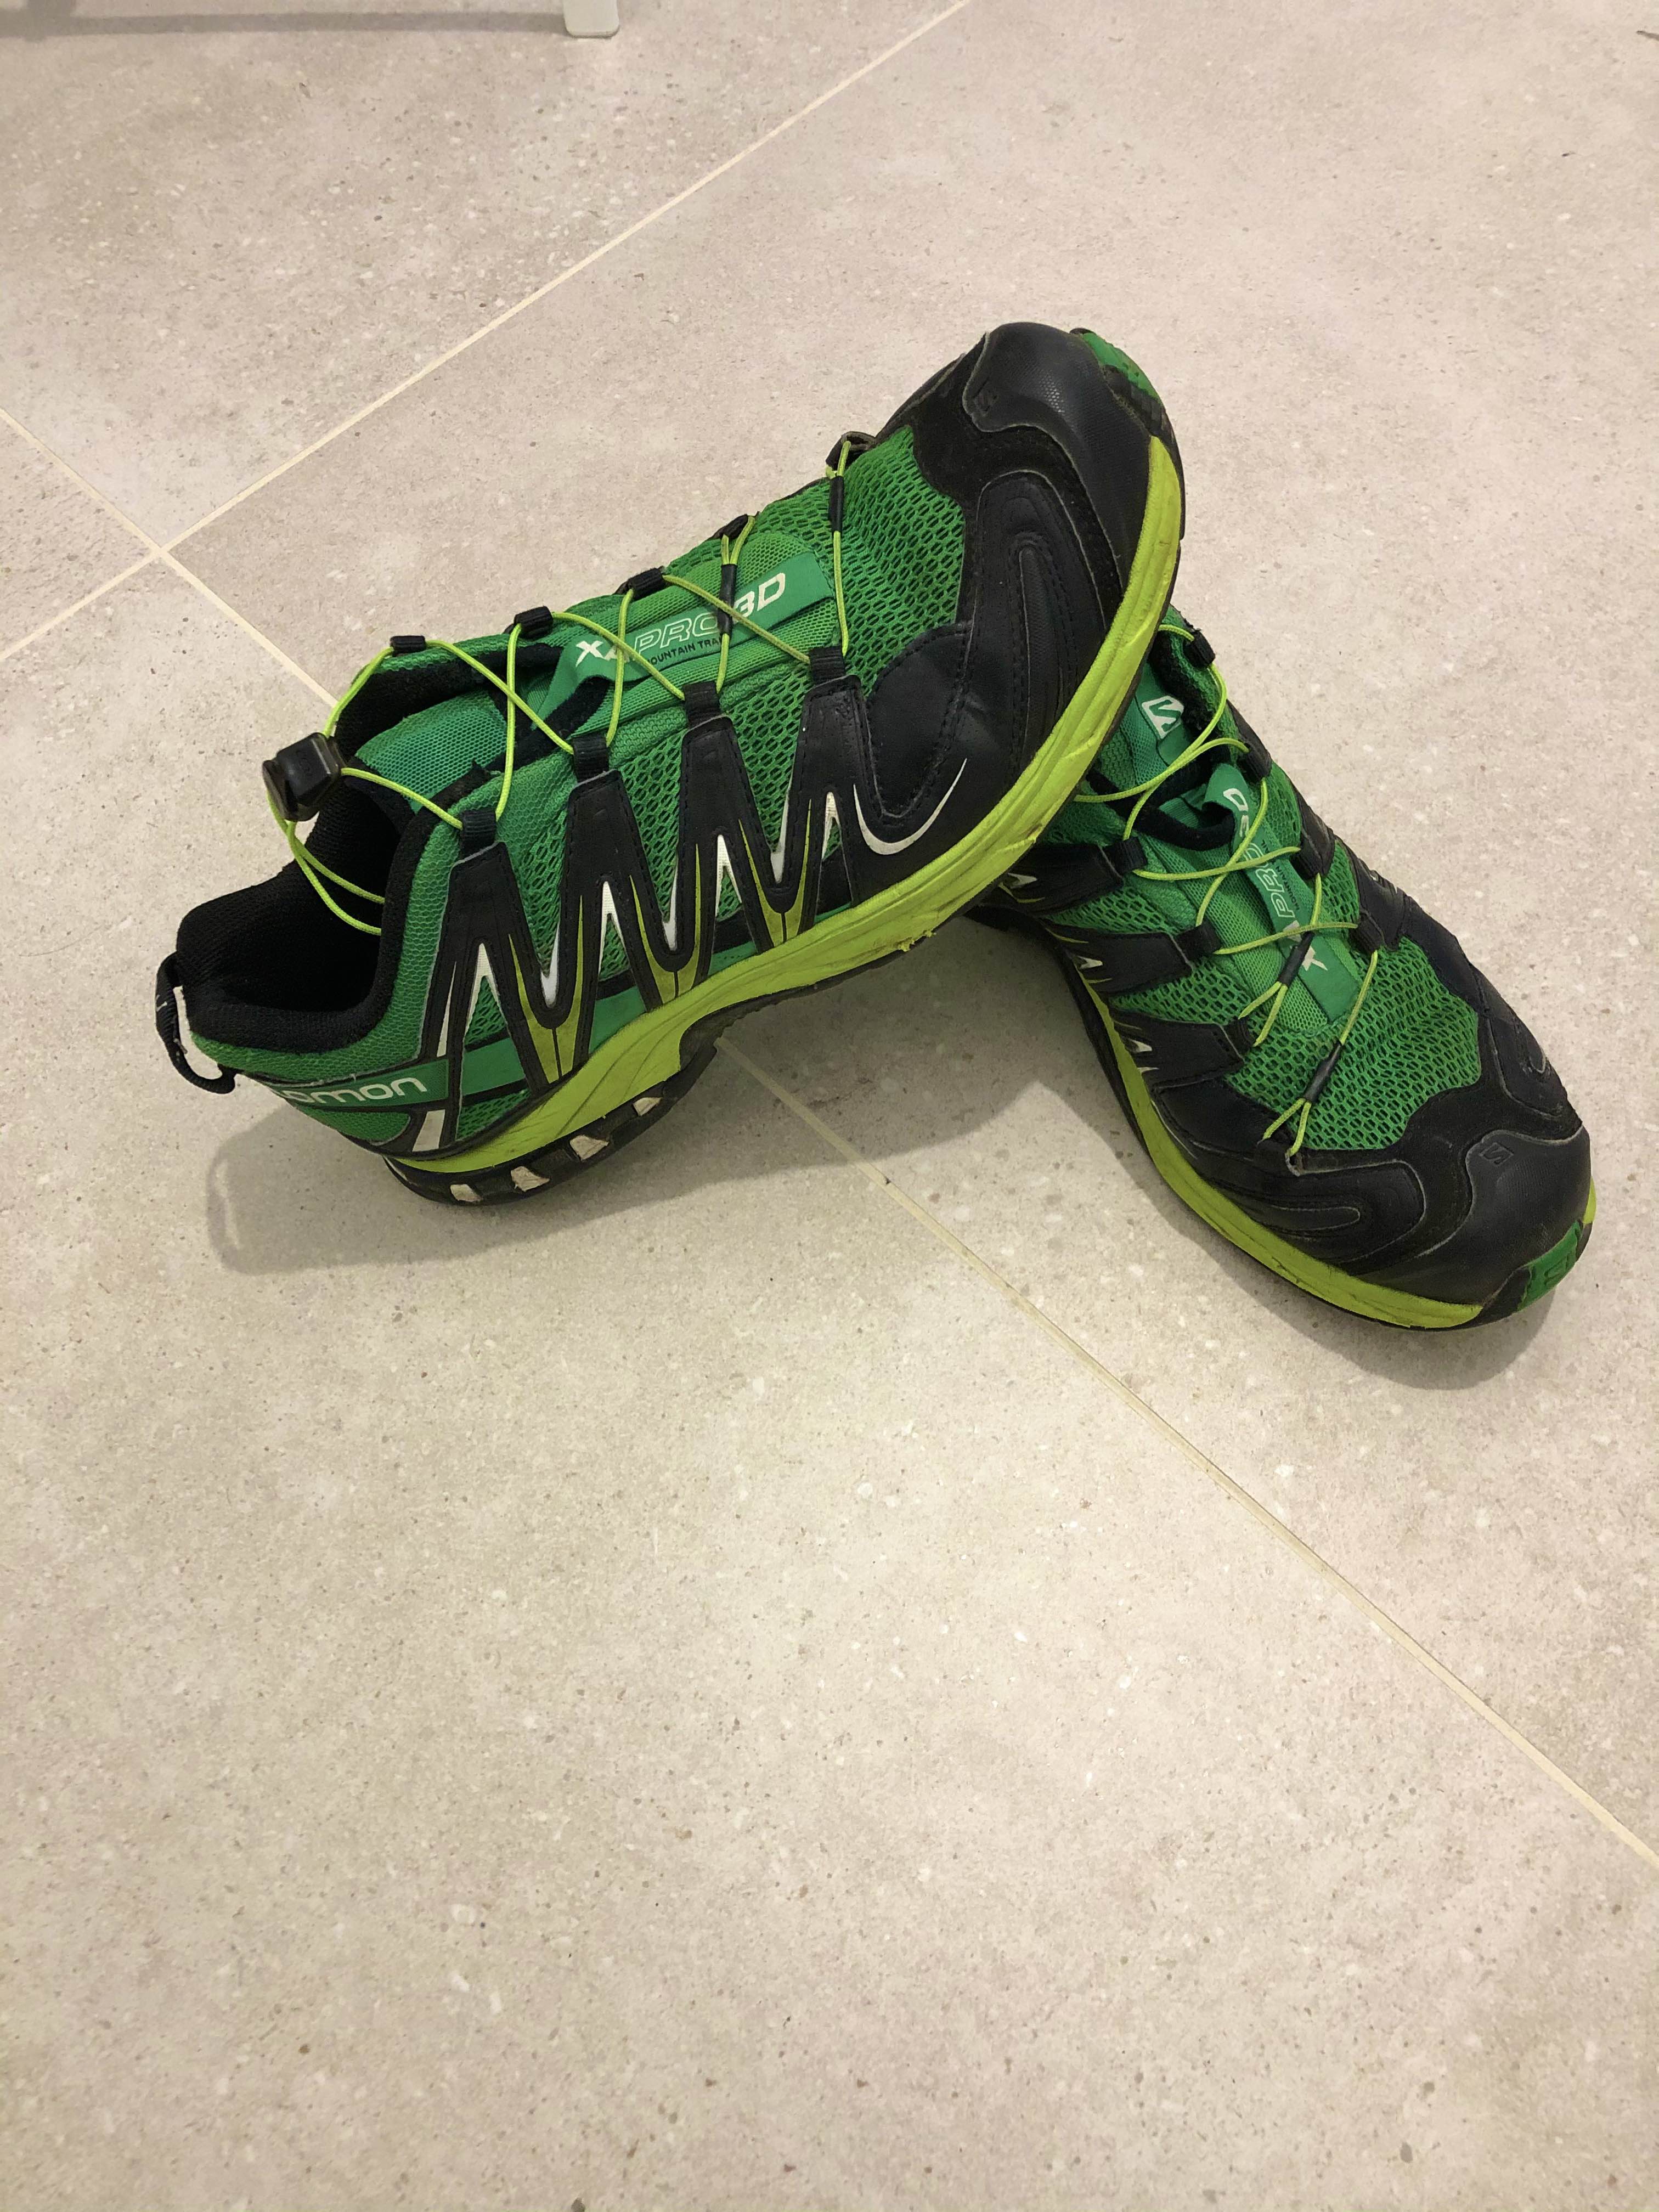 Salomon trail shoes - 1